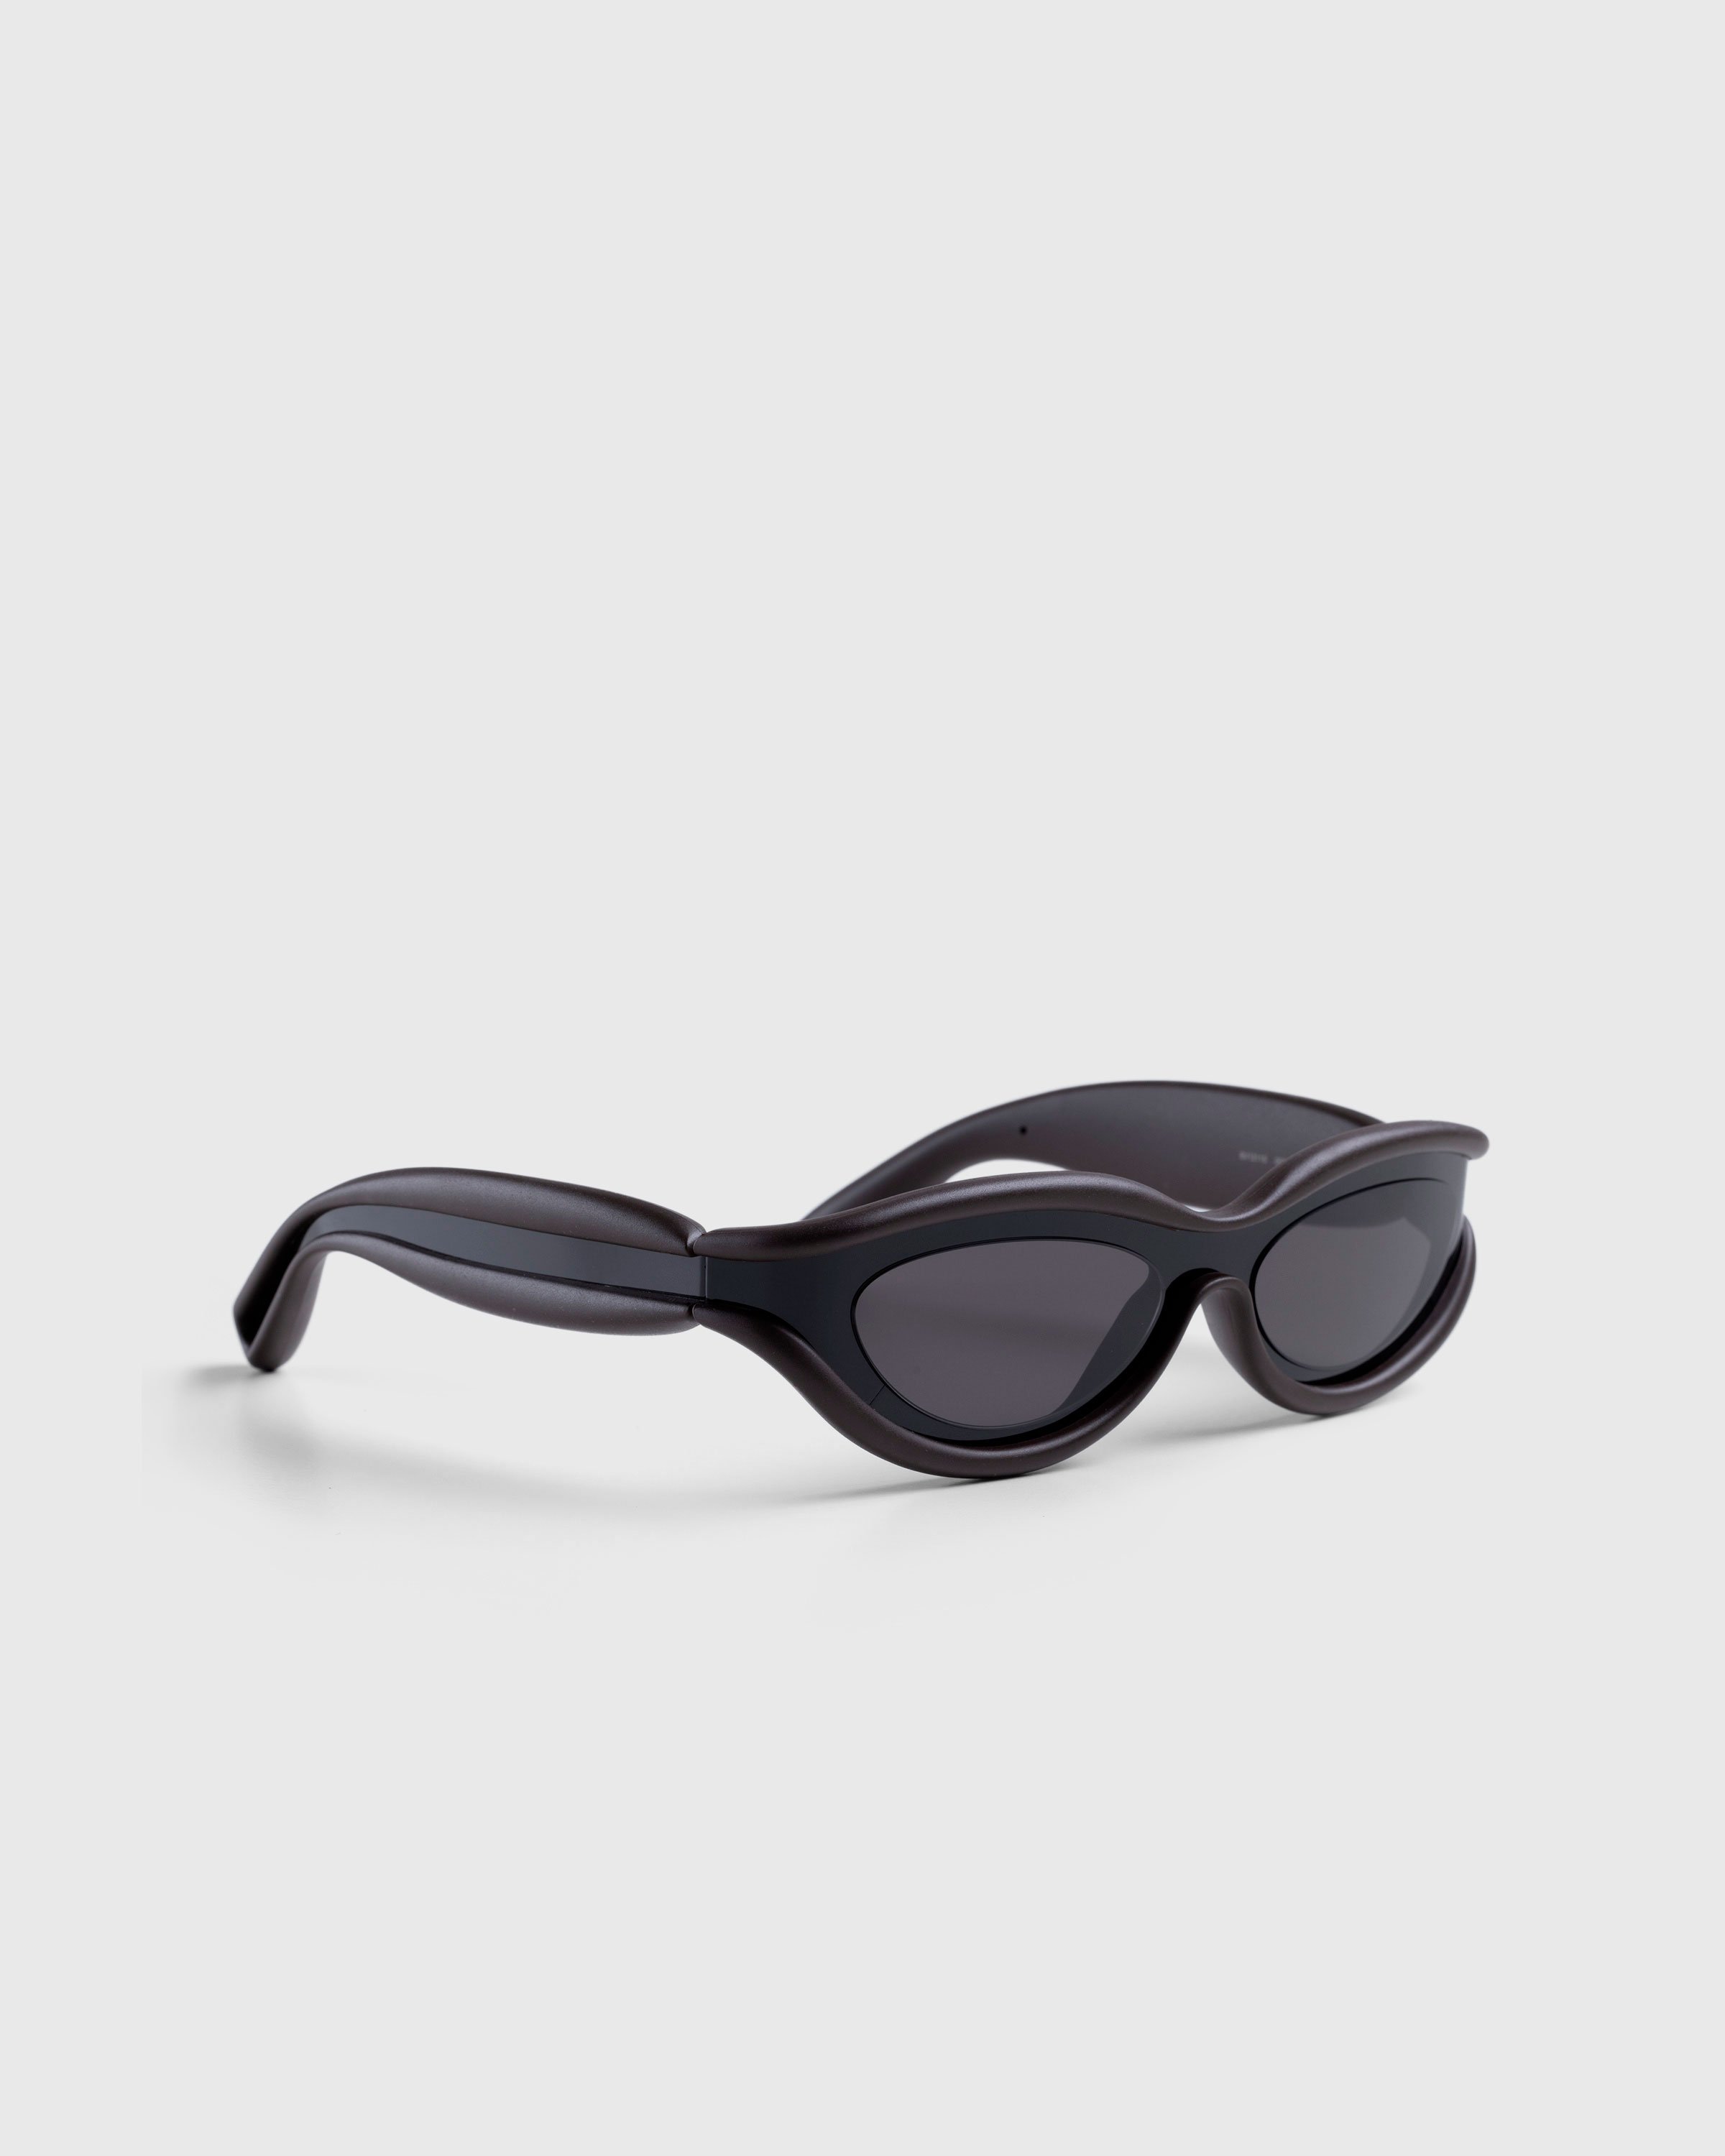 Bottega Veneta - Unapologetic Sunglasses Black - Accessories - Black - Image 2